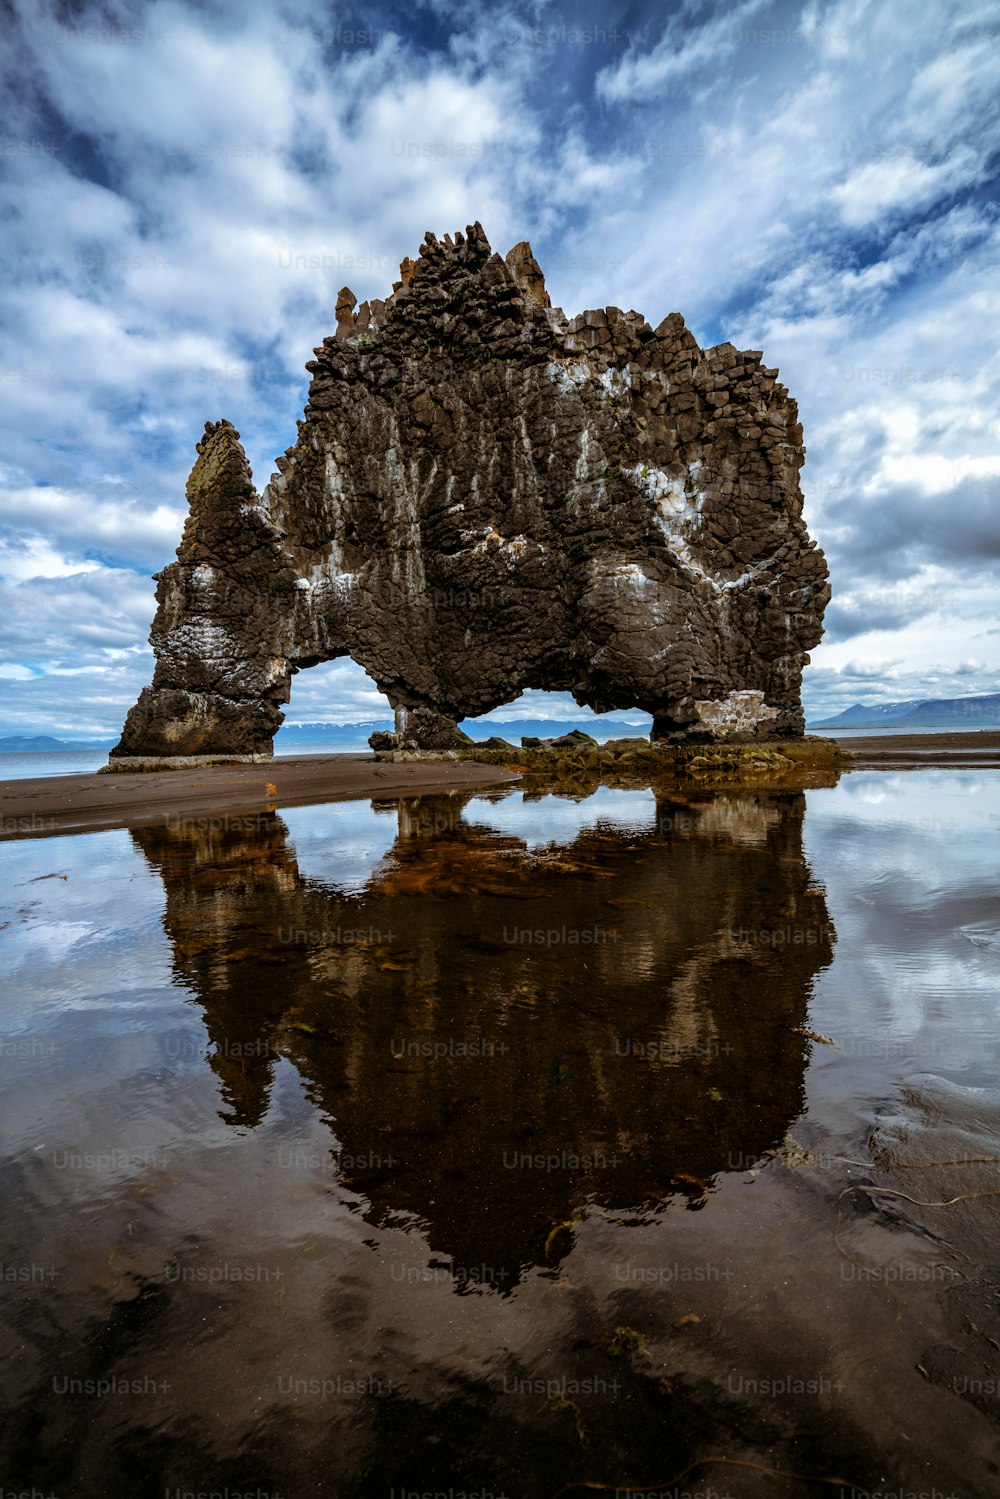 Hvitserkur roccia basaltica unica in Islanda. Il maestoso Hvitserkur è un monolite alto 15 metri che si trova al largo della penisola di Vatnsnes, nel nord-ovest dell'Islanda. È una famosa destinazione turistica dell'Islanda.